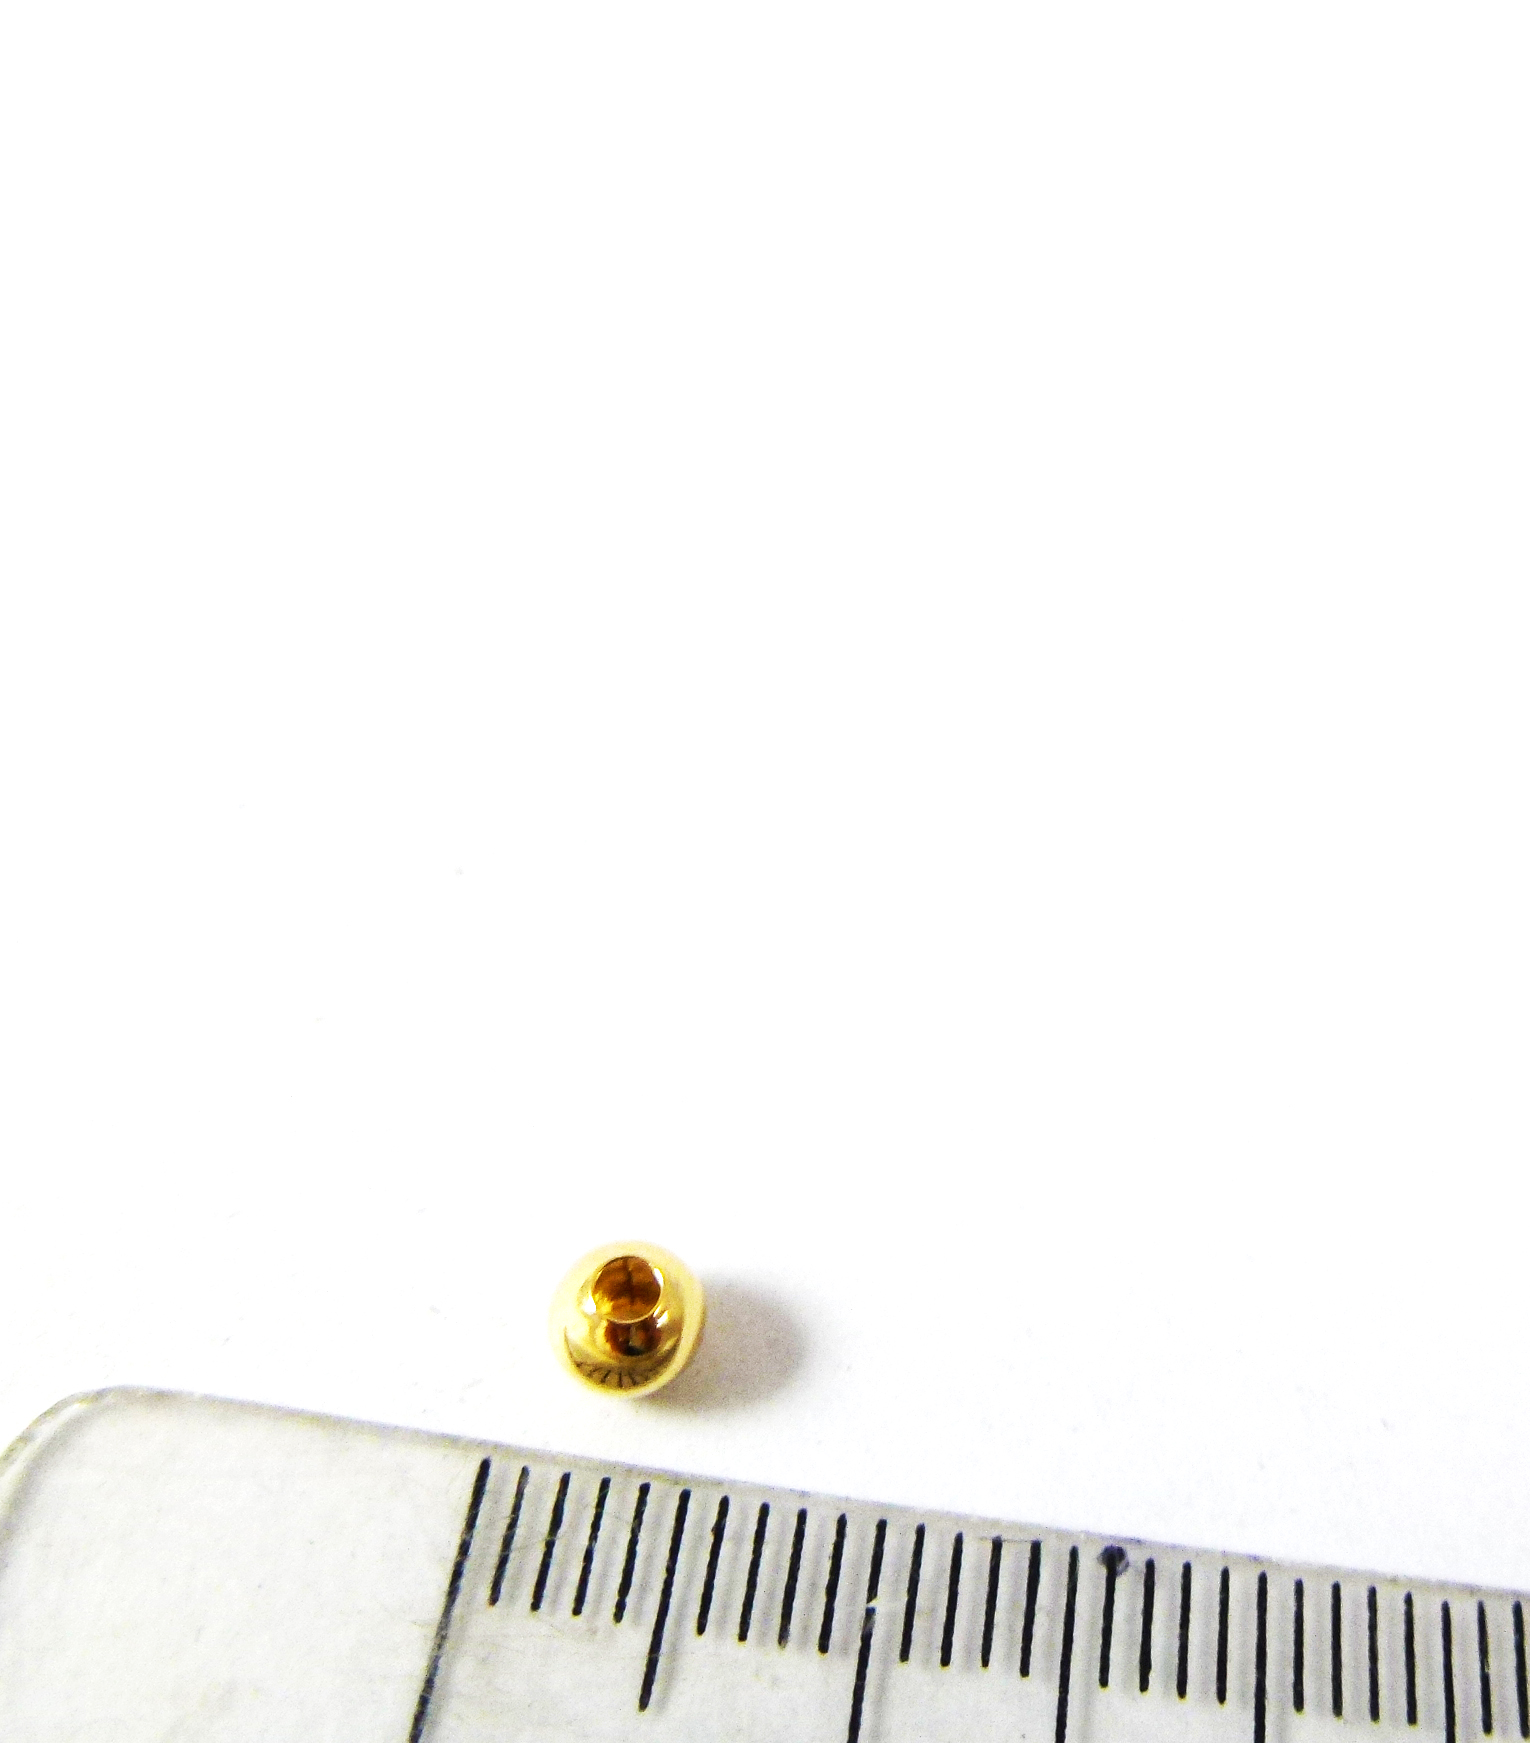 4mm銅鍍金色圓珠